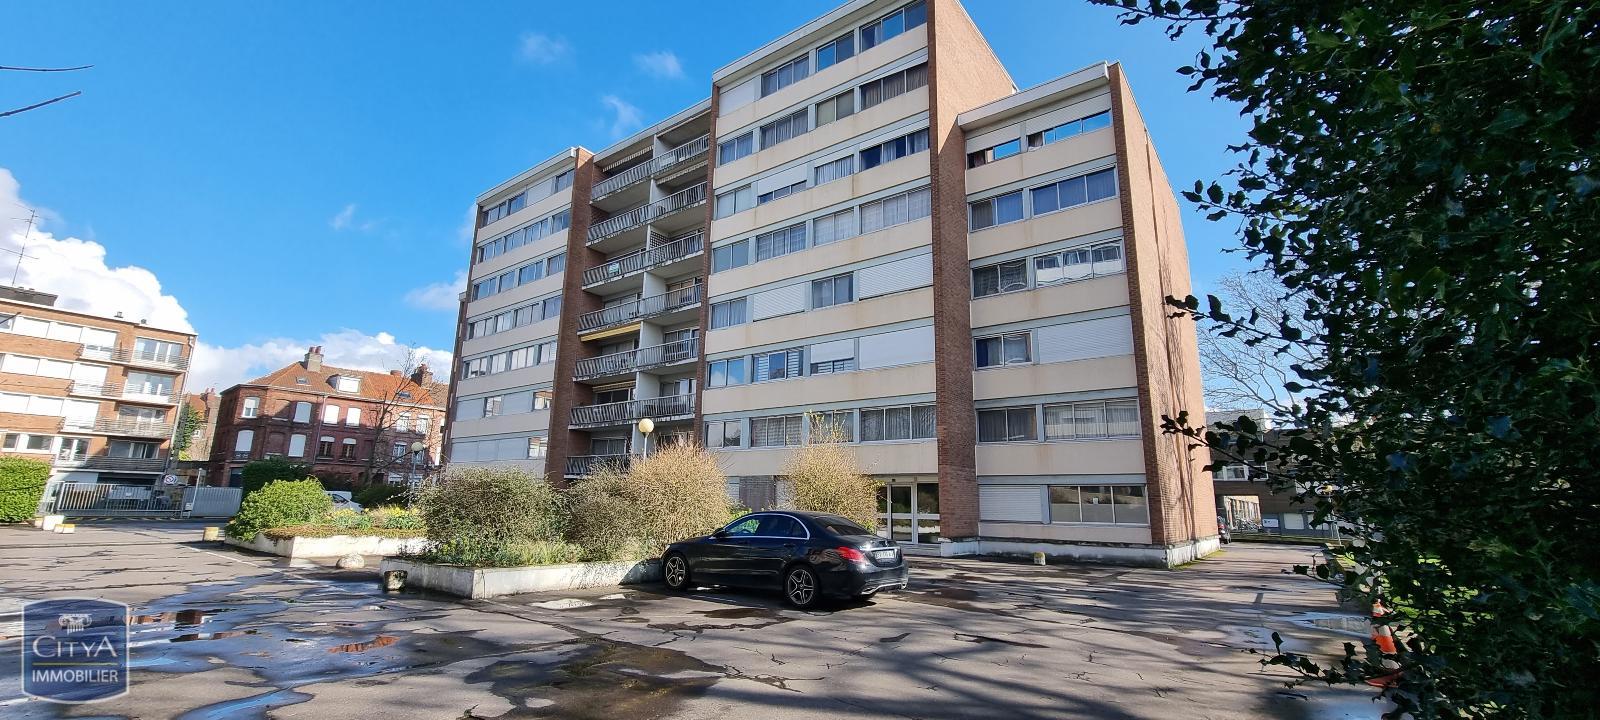 Vente Appartement 68m² 3 Pièces à Lille (59000) - Citya